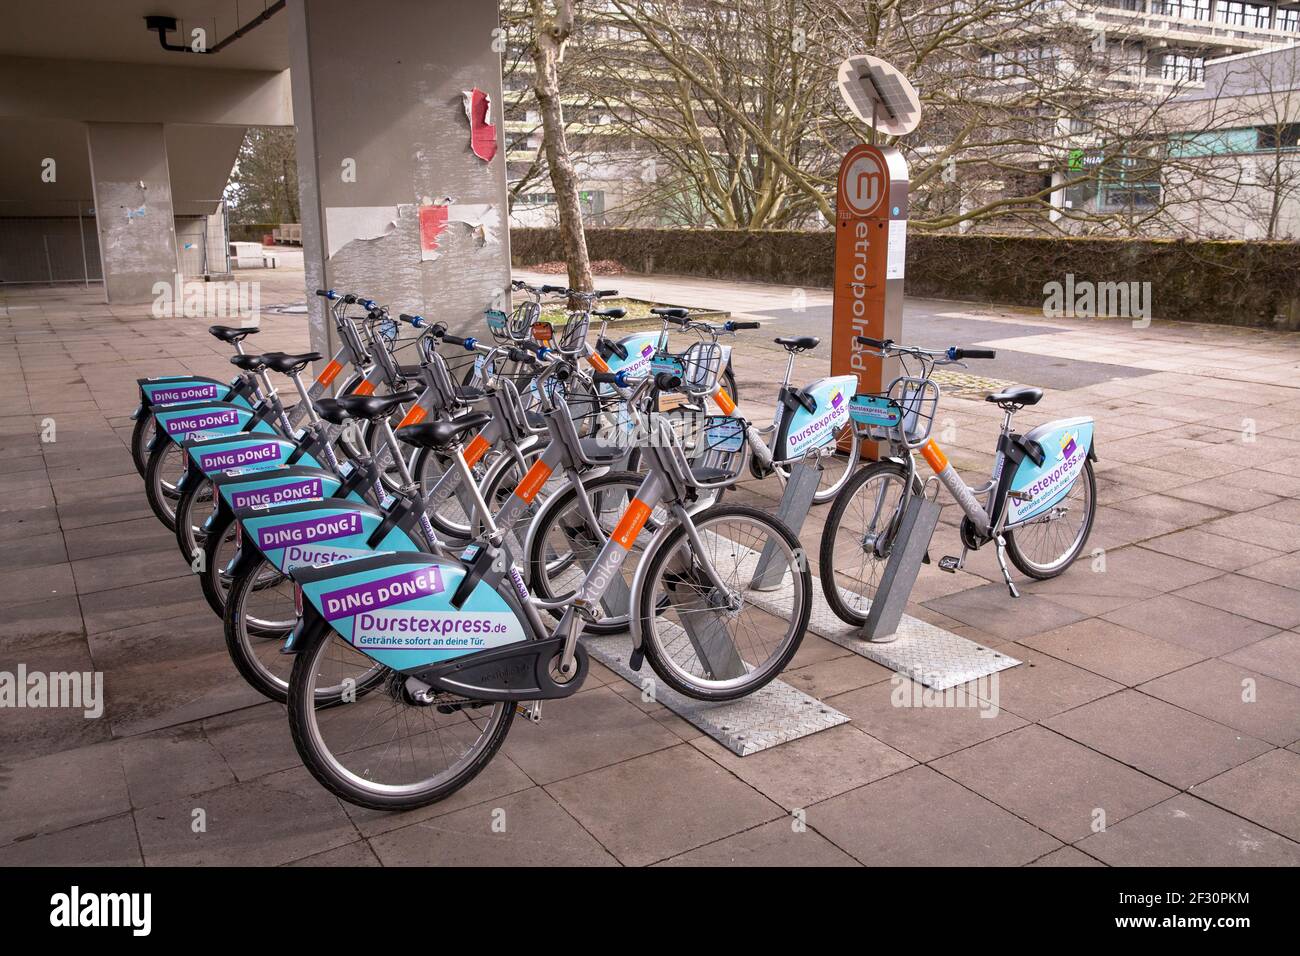 Metropolradruhr Bike-Sharing-Station auf dem Campus der Ruhr-Universität Bochum, Nordrhein-Westfalen, Deutschland. Bahnhof für metropolradruhr Miet Stockfoto